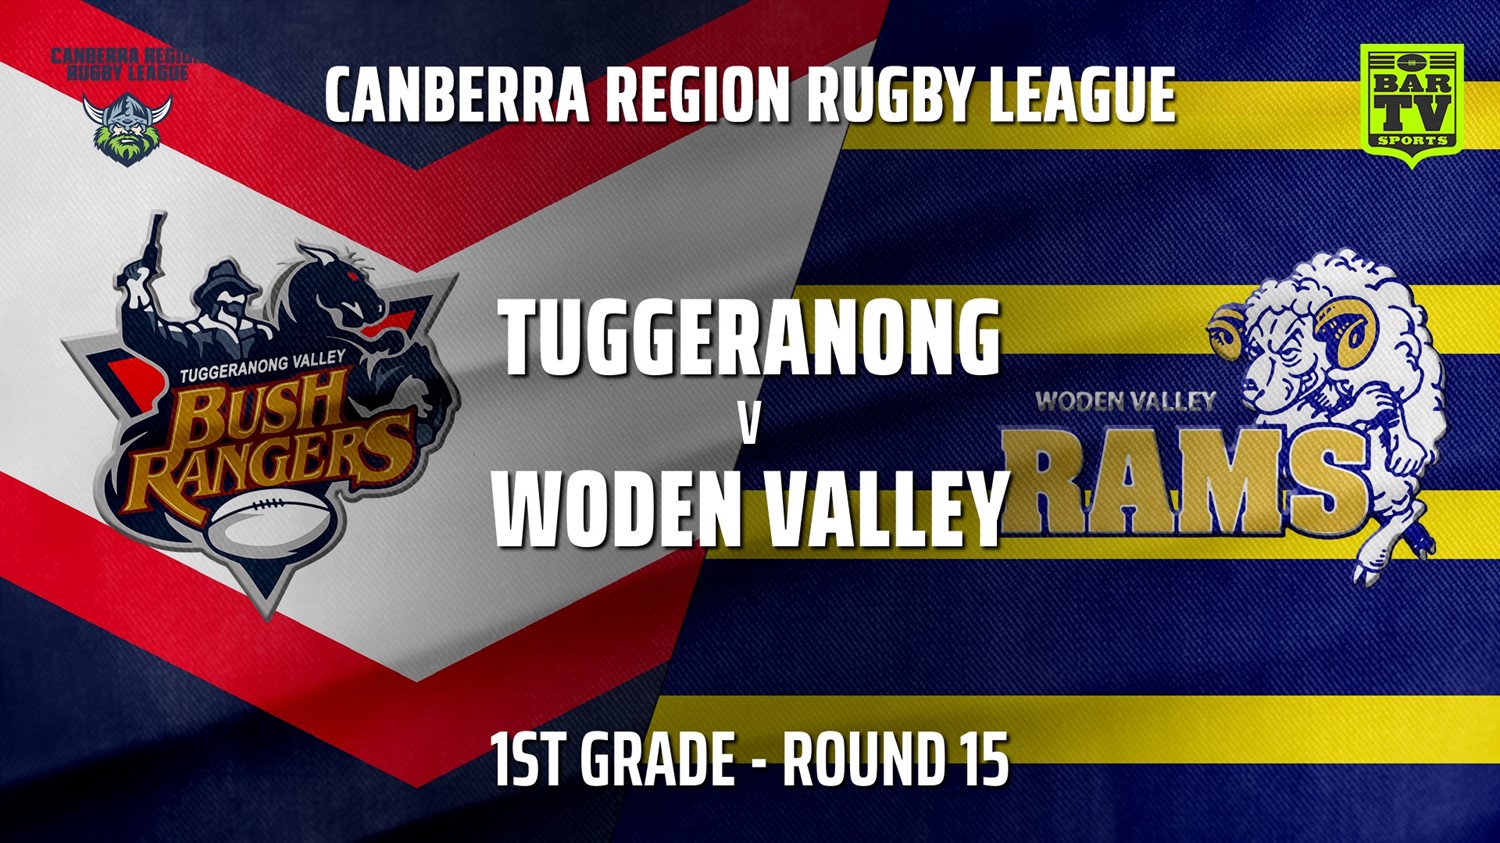 210807-Canberra Round 15 - 1st Grade - Tuggeranong Bushrangers v Woden Valley Rams Slate Image